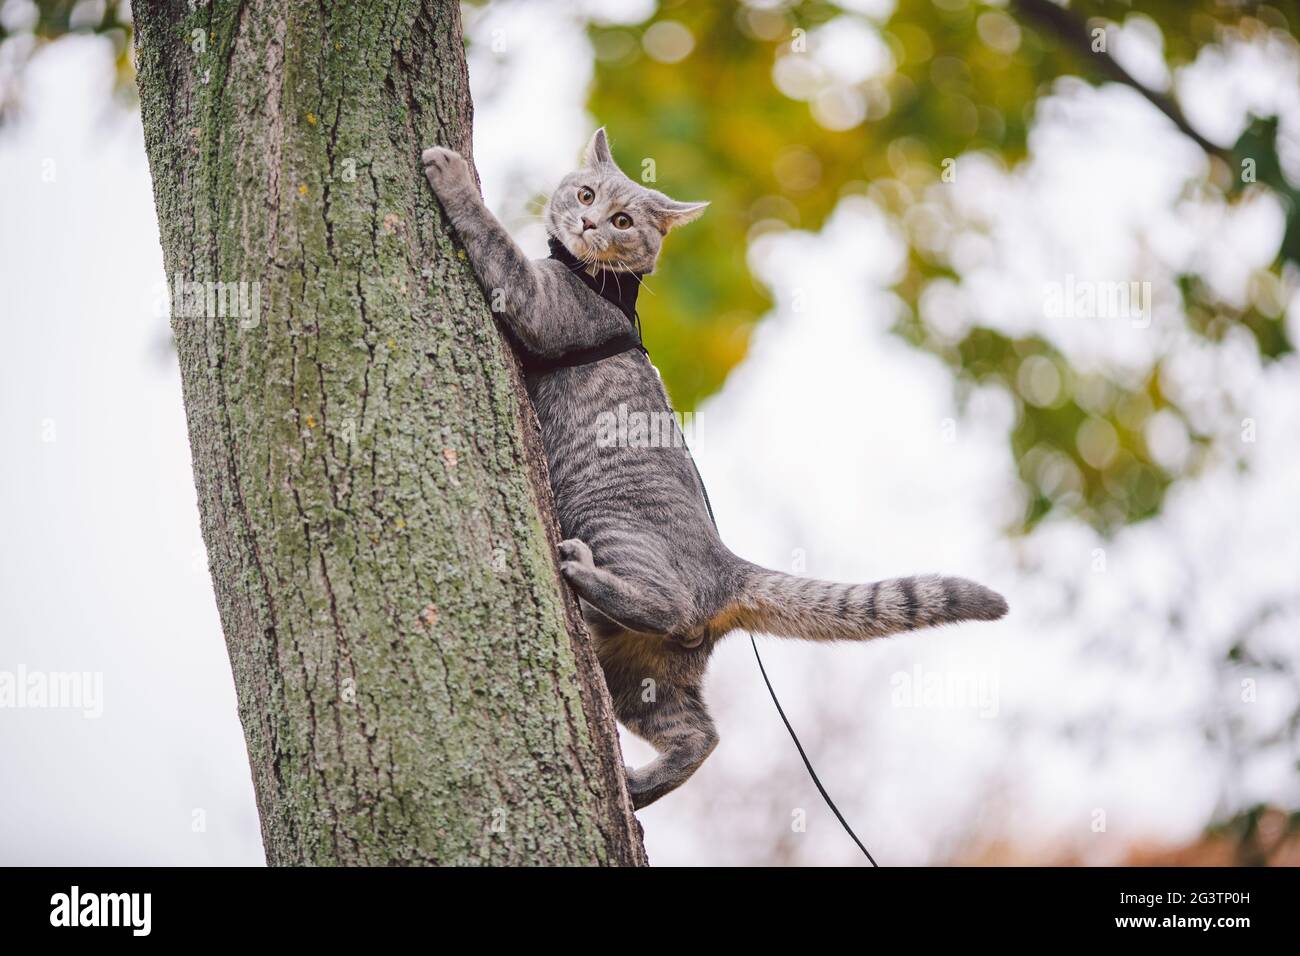 Inländisches junges Kätzchen männlich grau gute Form gepflegtes, gekleidetes sicheres Katzenleinen-Geschirr, das auf einem Baum sitzend aufmerksam überrascht wurde Stockfoto